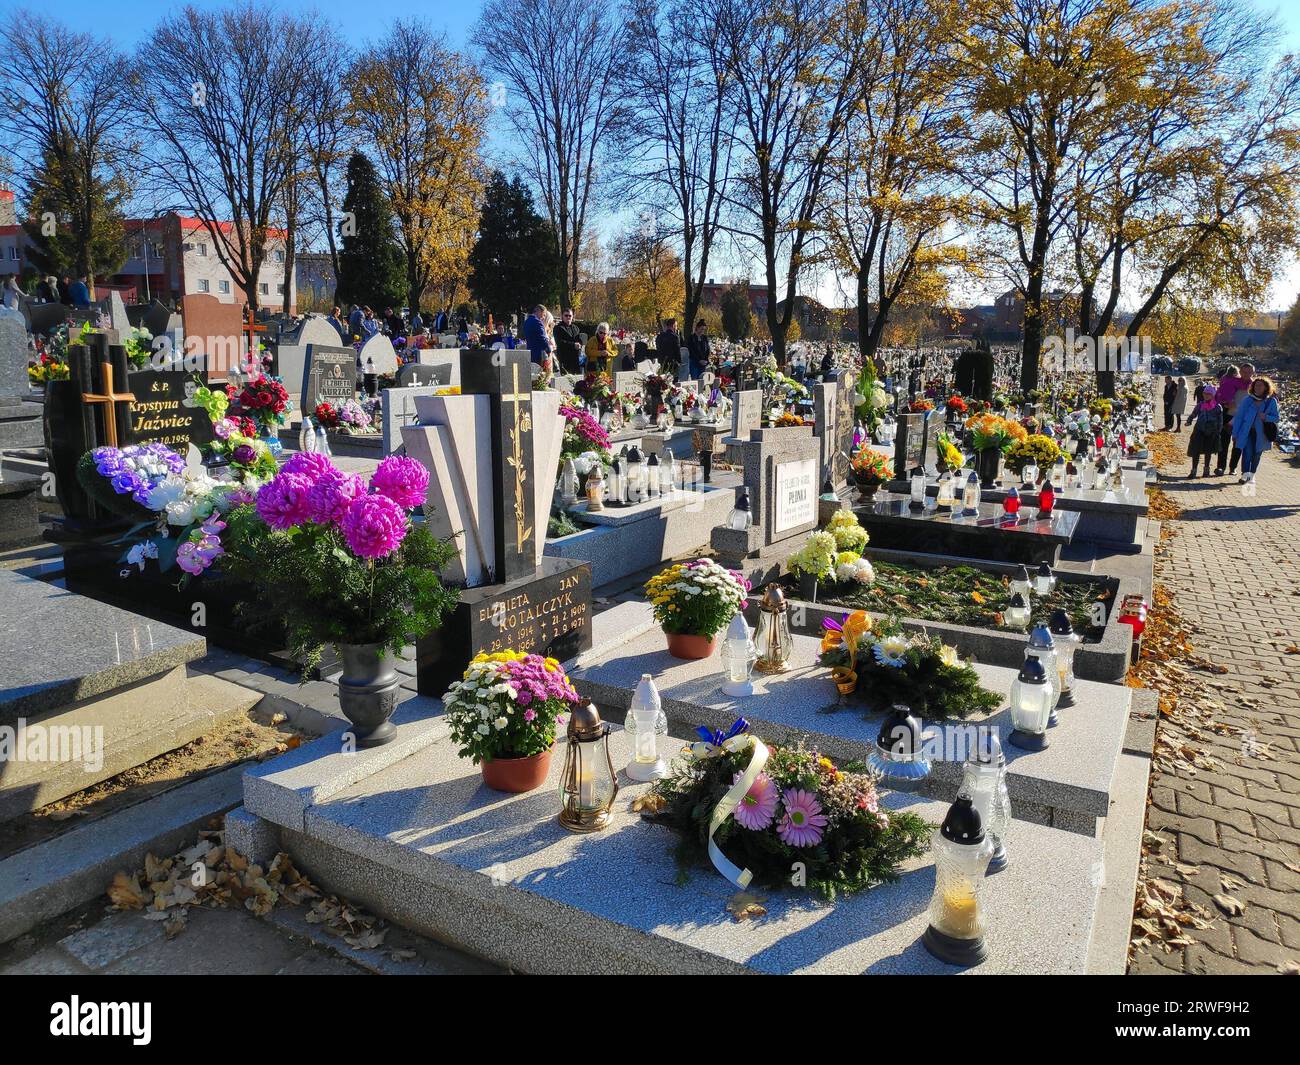 BYTOM, POLEN - 1. NOVEMBER 2021: Menschen besuchen die Gräber auf einem Friedhof am Allerheiligen-Tag (Wszystkich Swietych) in Polen. Stockfoto